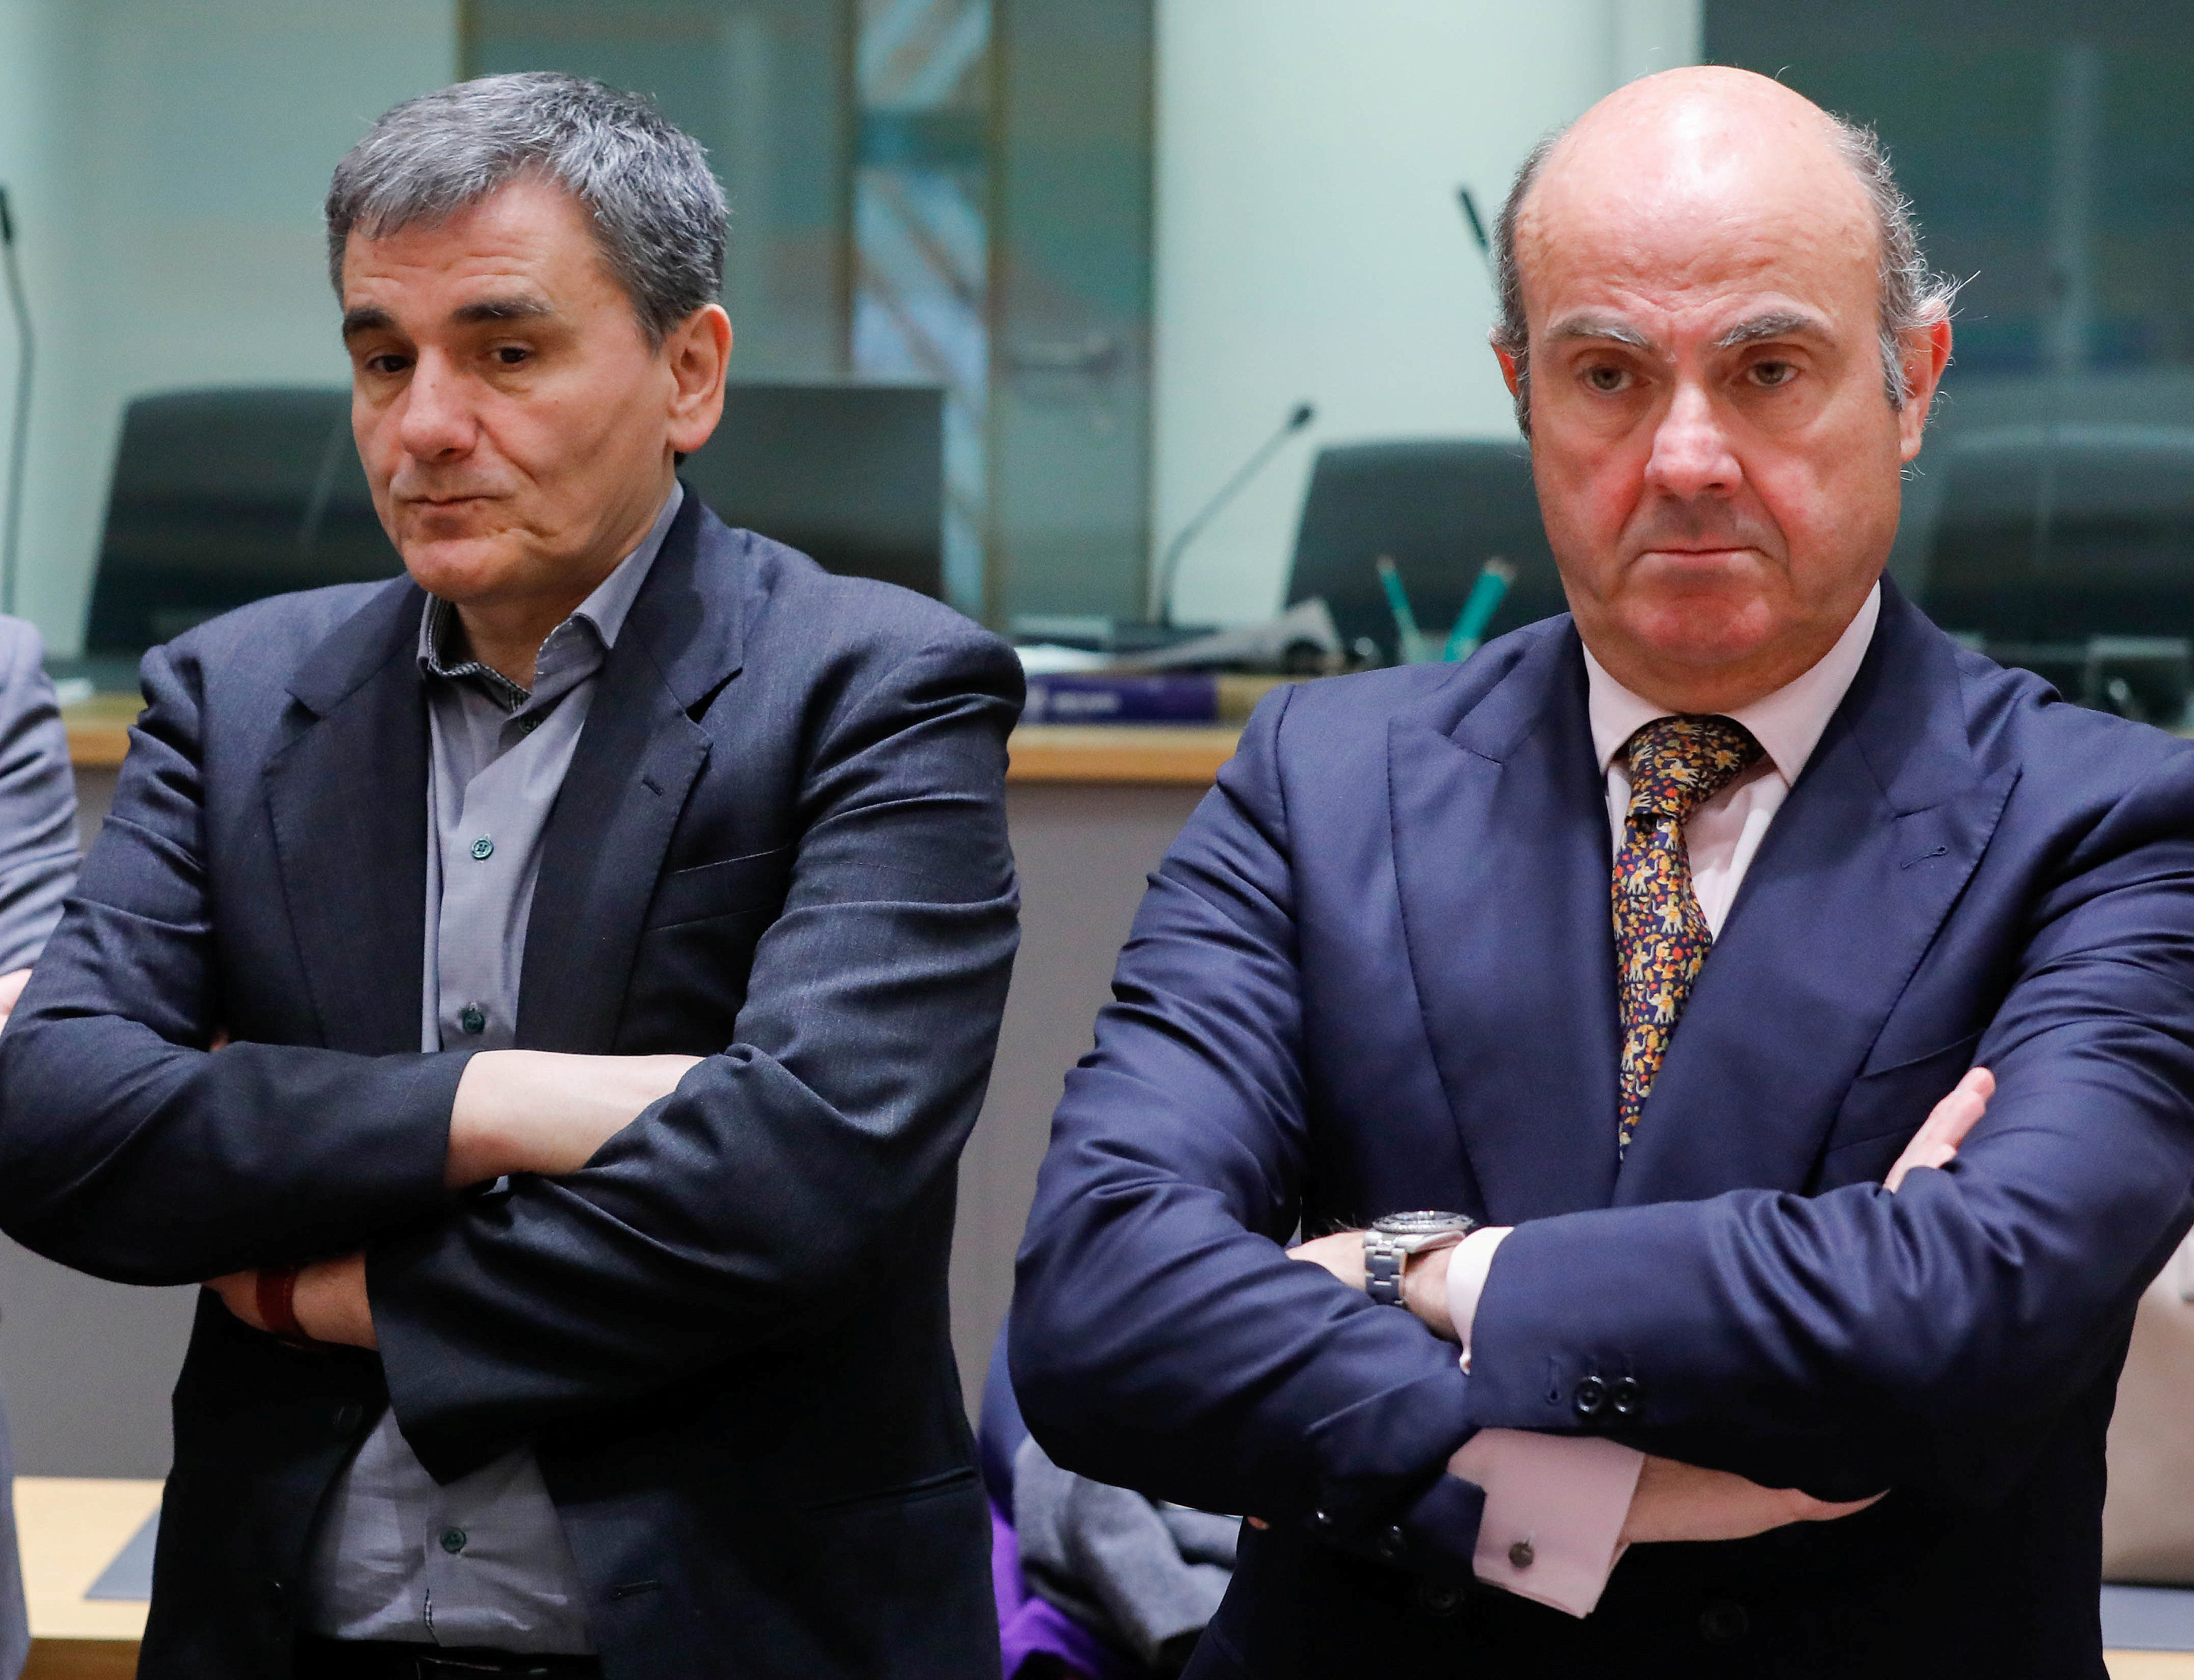 Με μπλόκο της δόσης απειλεί η Ισπανία για το πρόβλημα με στελέχη του ΤΑΙΠΕΔ